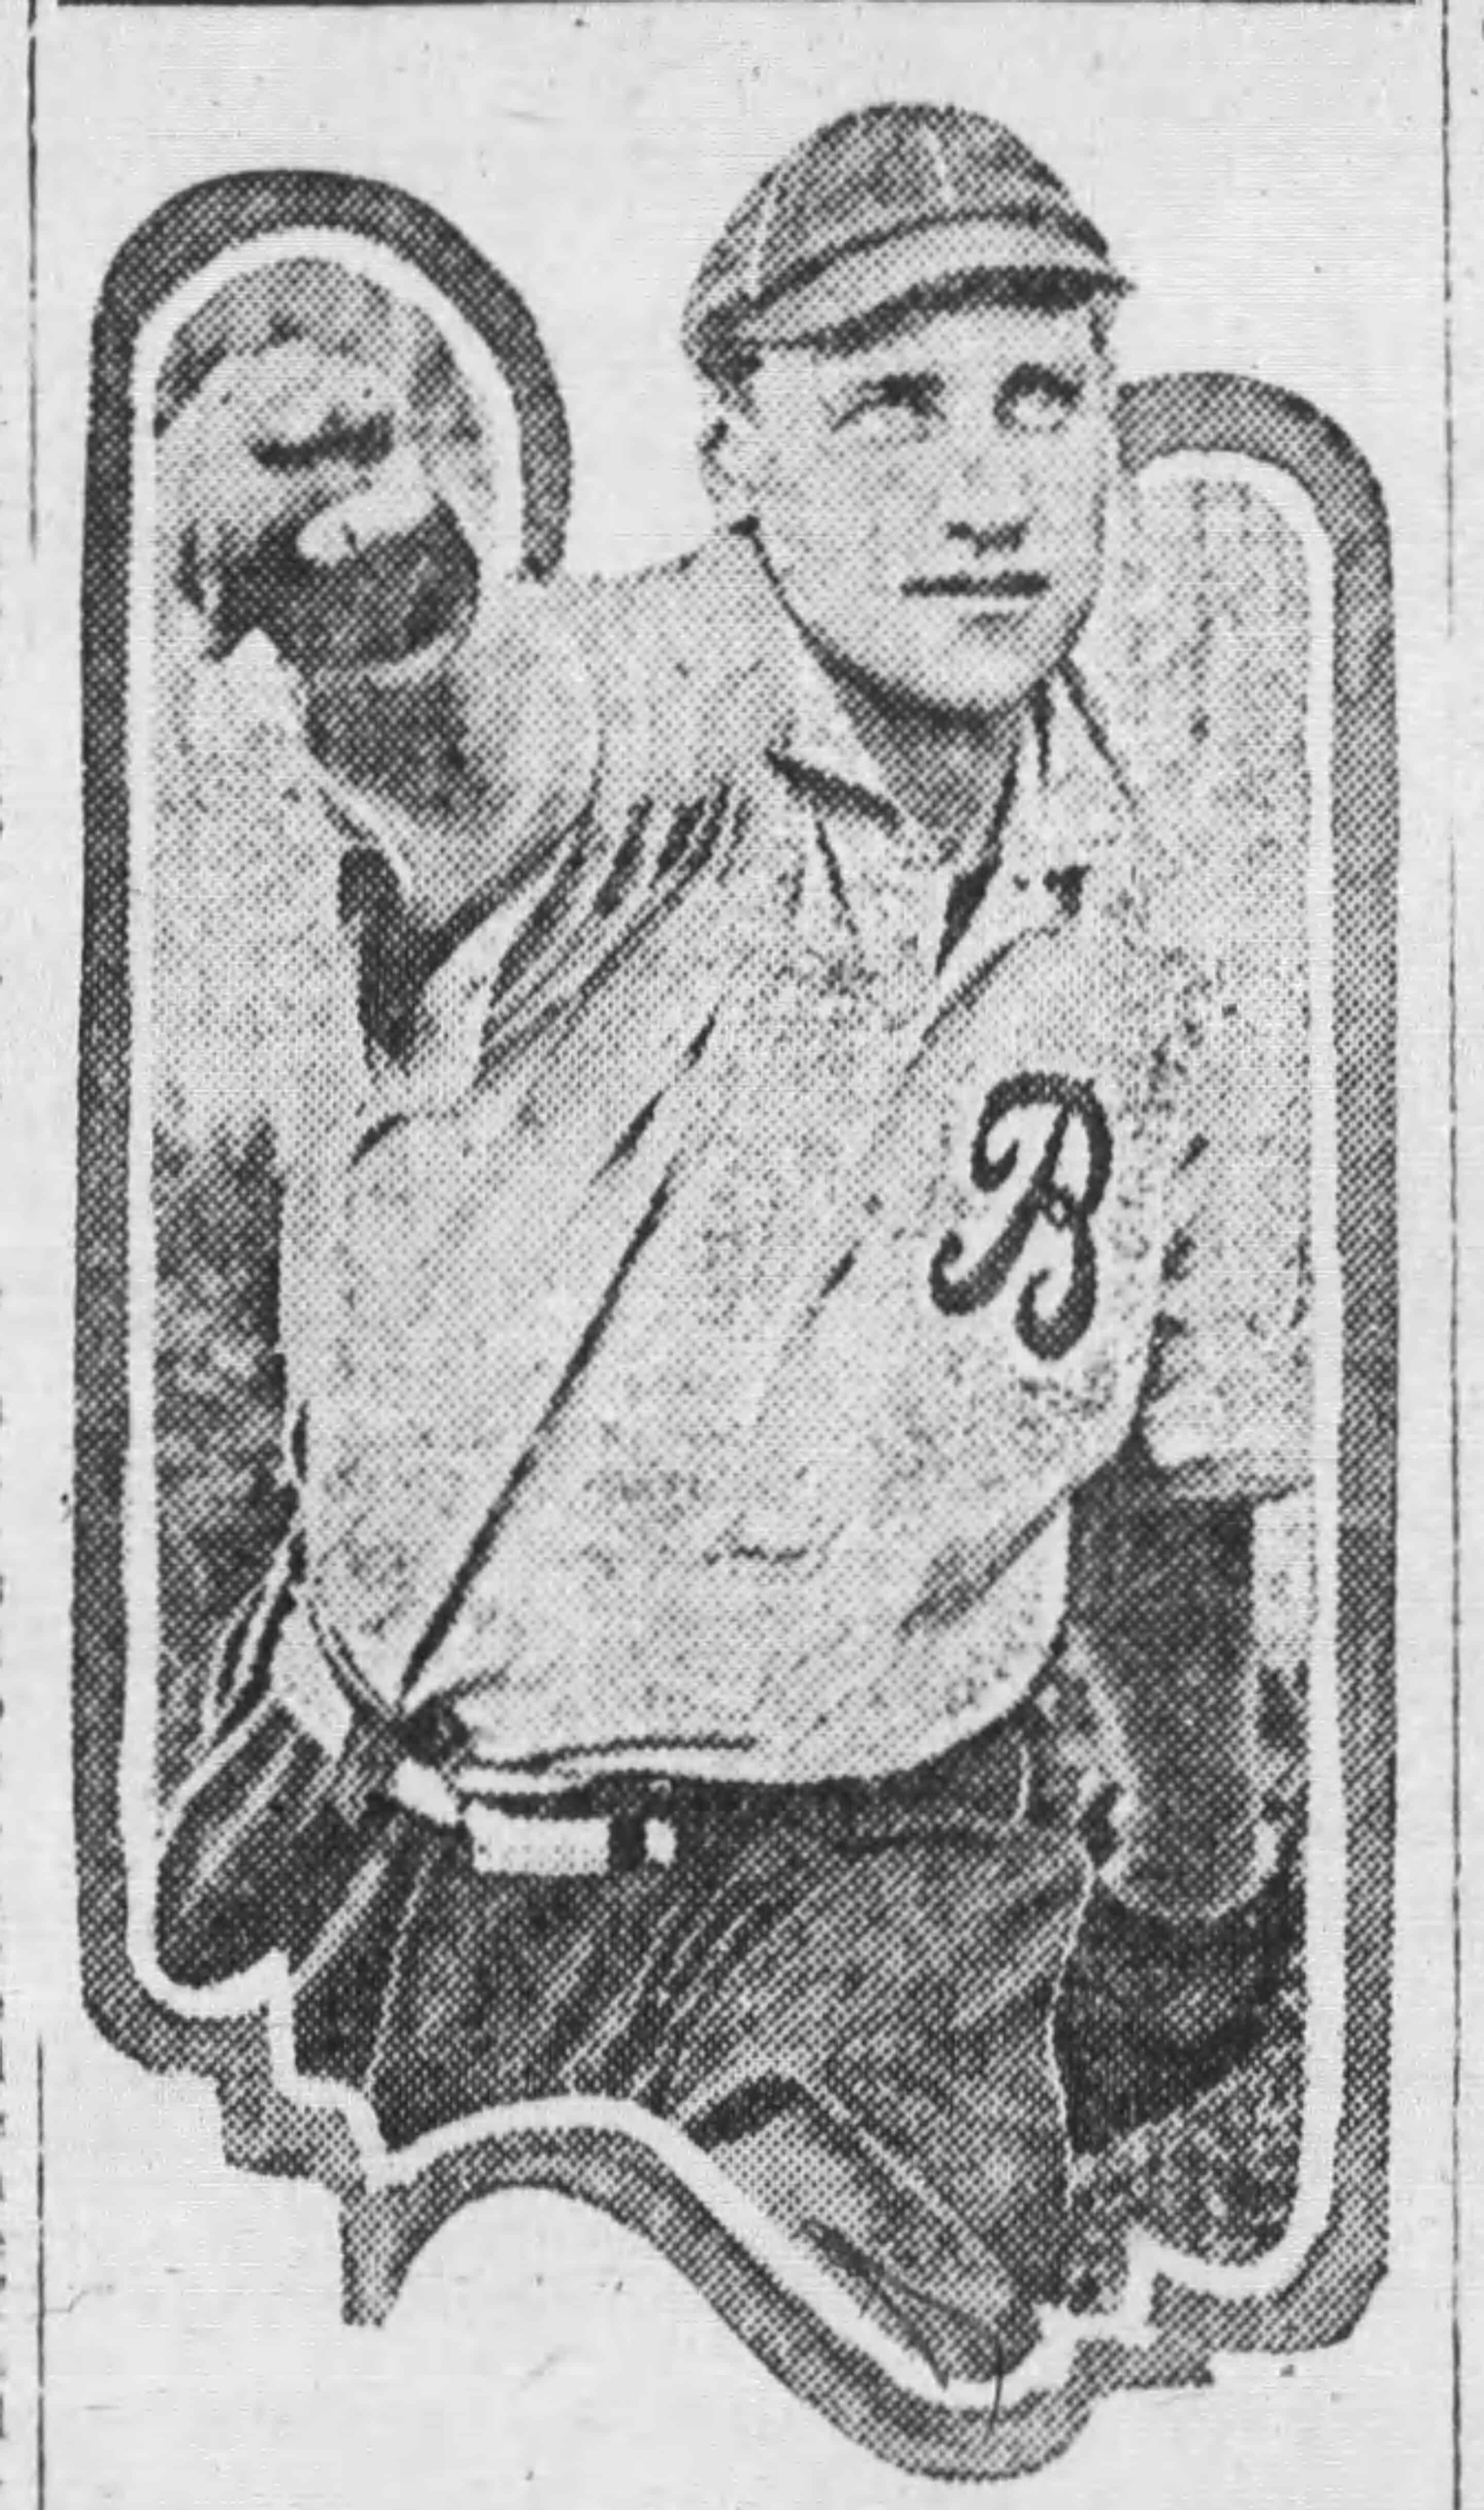 Raymond C. Boyd – Big League Pitcher